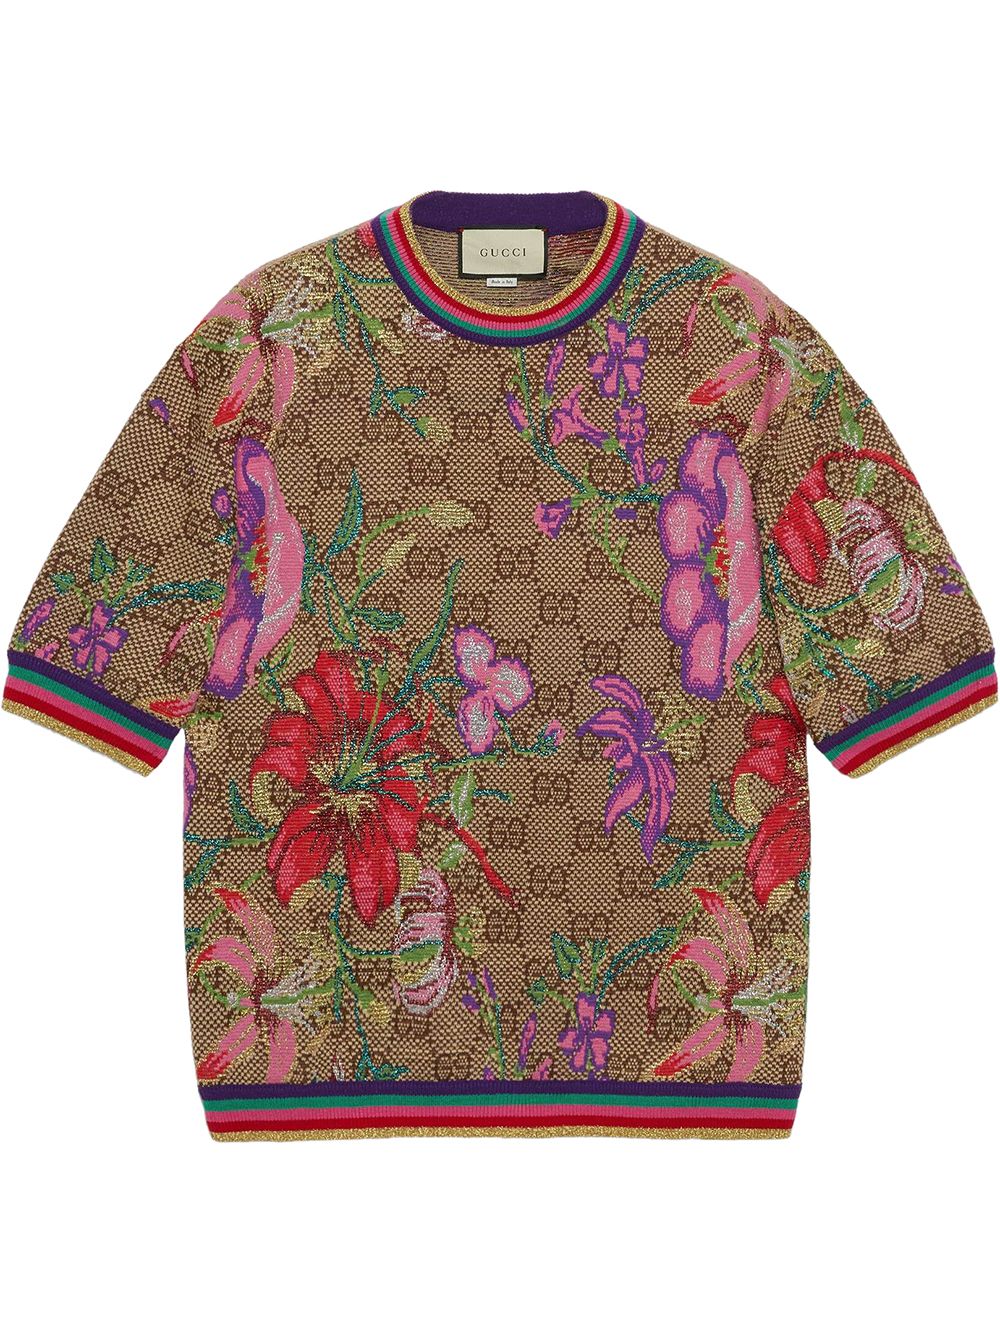 фото Gucci футболка с монограммой и цветочным принтом